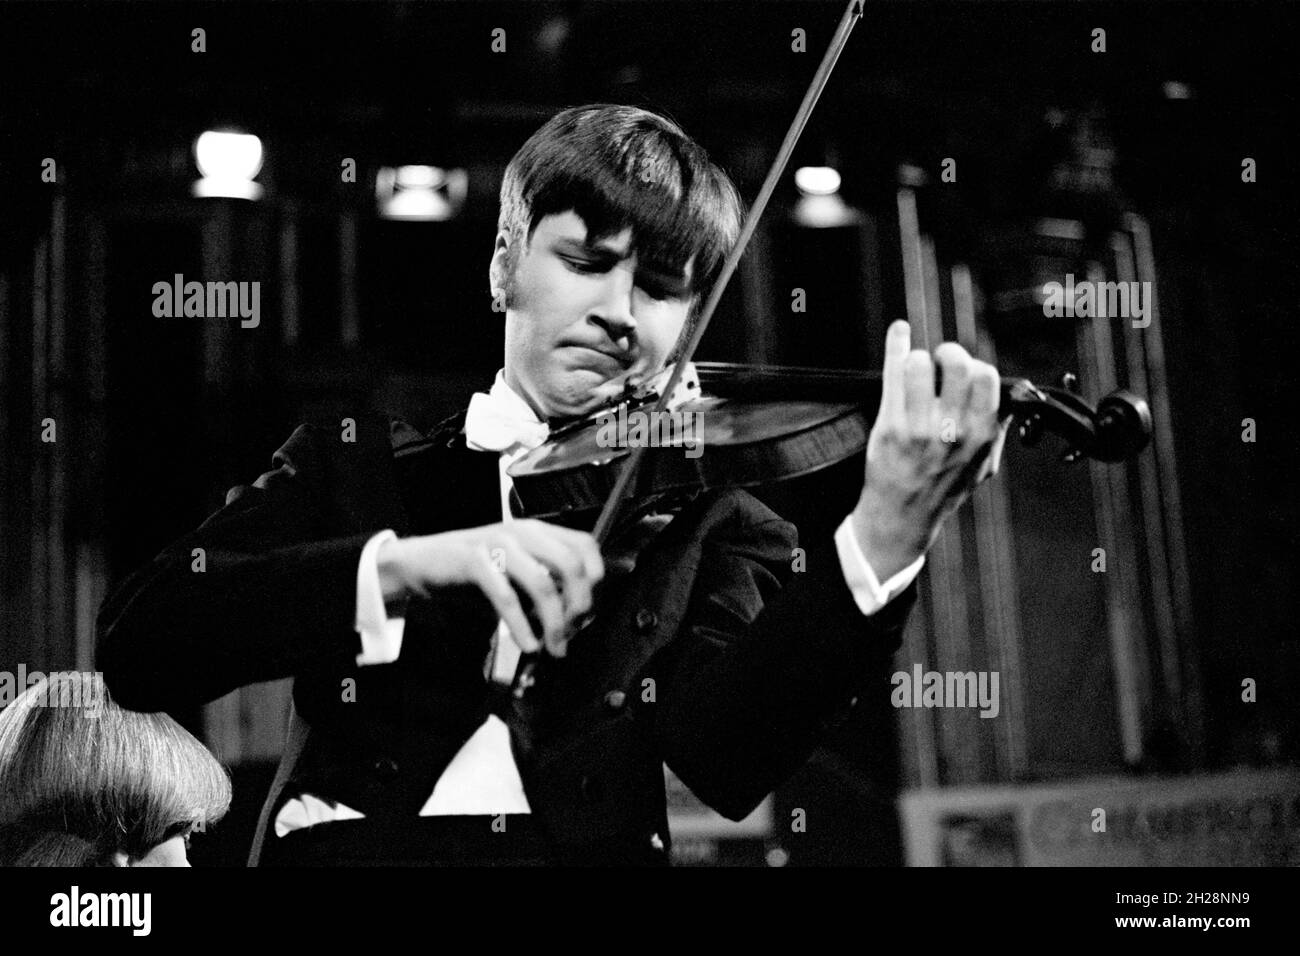 Violinista e violinista inglese Nigel Kennedy, di 26 anni, che si esibisce in uno dei concerti Schools Prom, Royal Albert Hall, Londra, Inghilterra nel 1982. Foto Stock